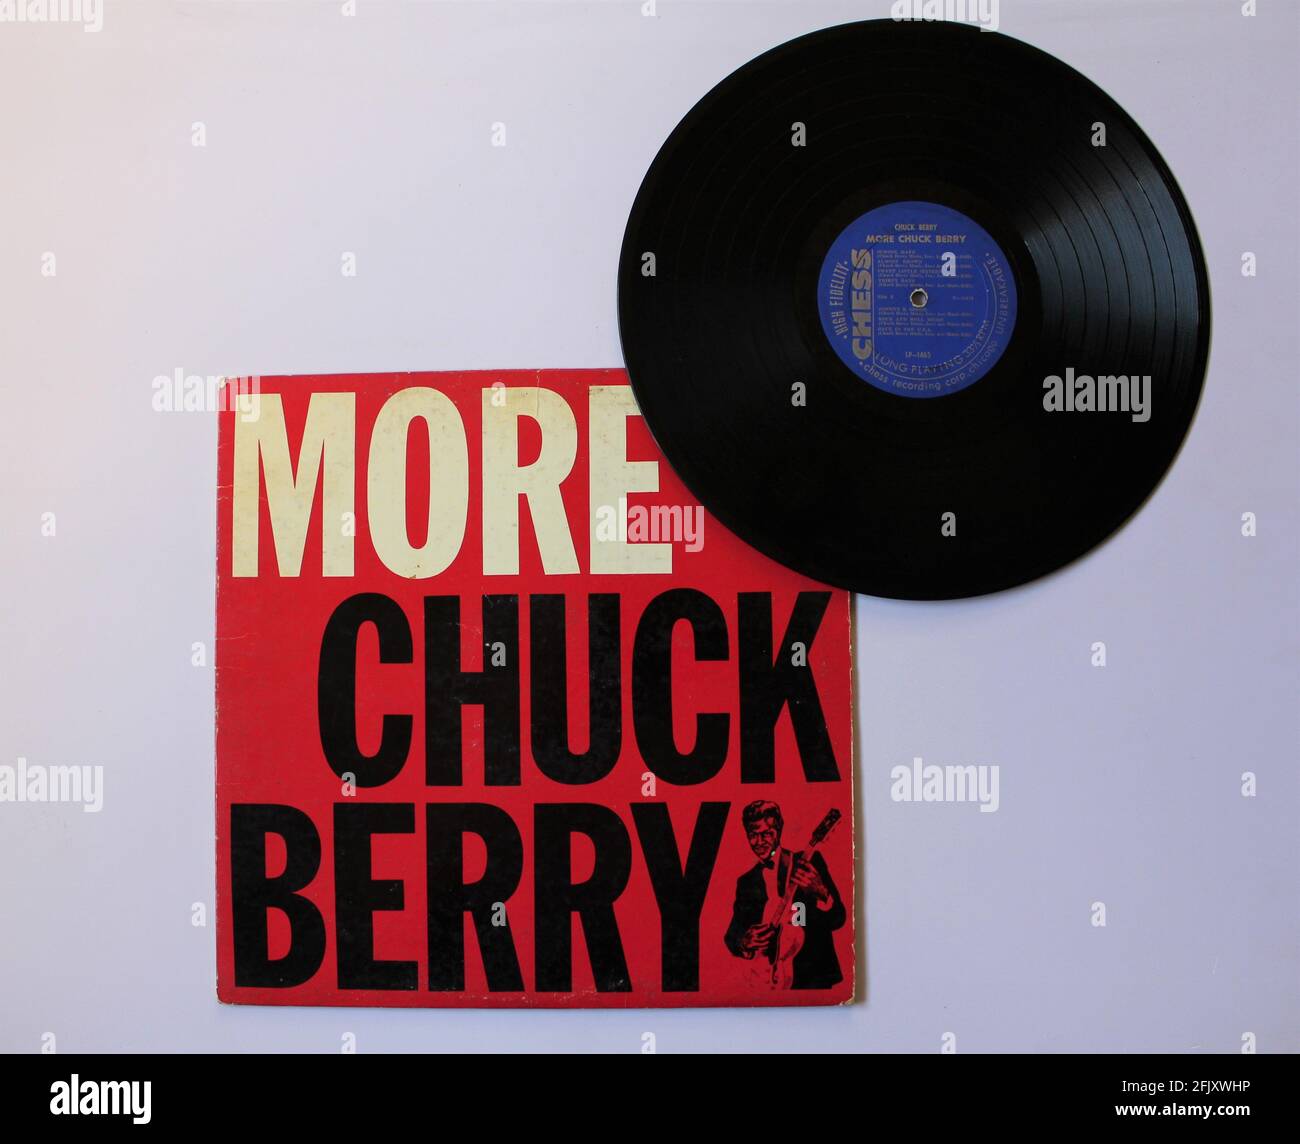 Rock and Roll, Rhythm and Blues-Künstler, Chuck Berry Musikalbum auf Vinyl-Schallplatte. Titel: Mehr Chuck Berry, Cover der 2. Auflage Stockfoto